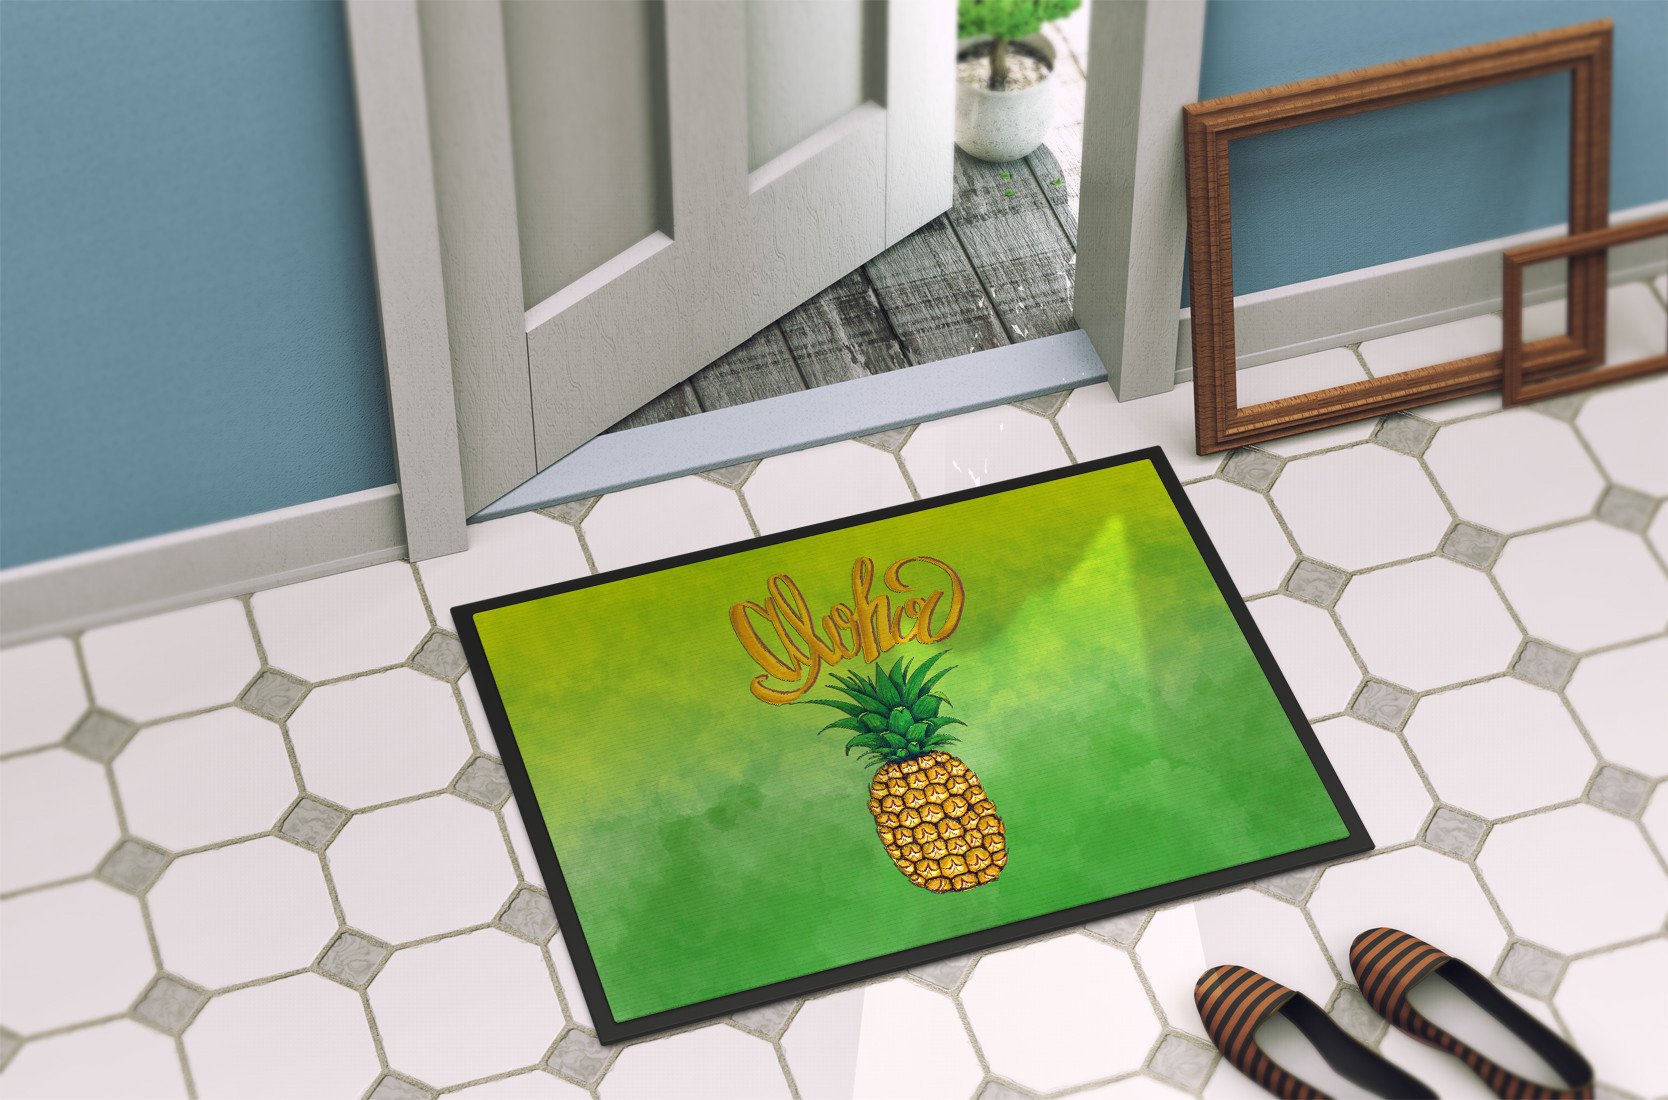 Aloha Pineapple Welcome Indoor or Outdoor Mat 24x36 BB7451JMAT by Caroline's Treasures